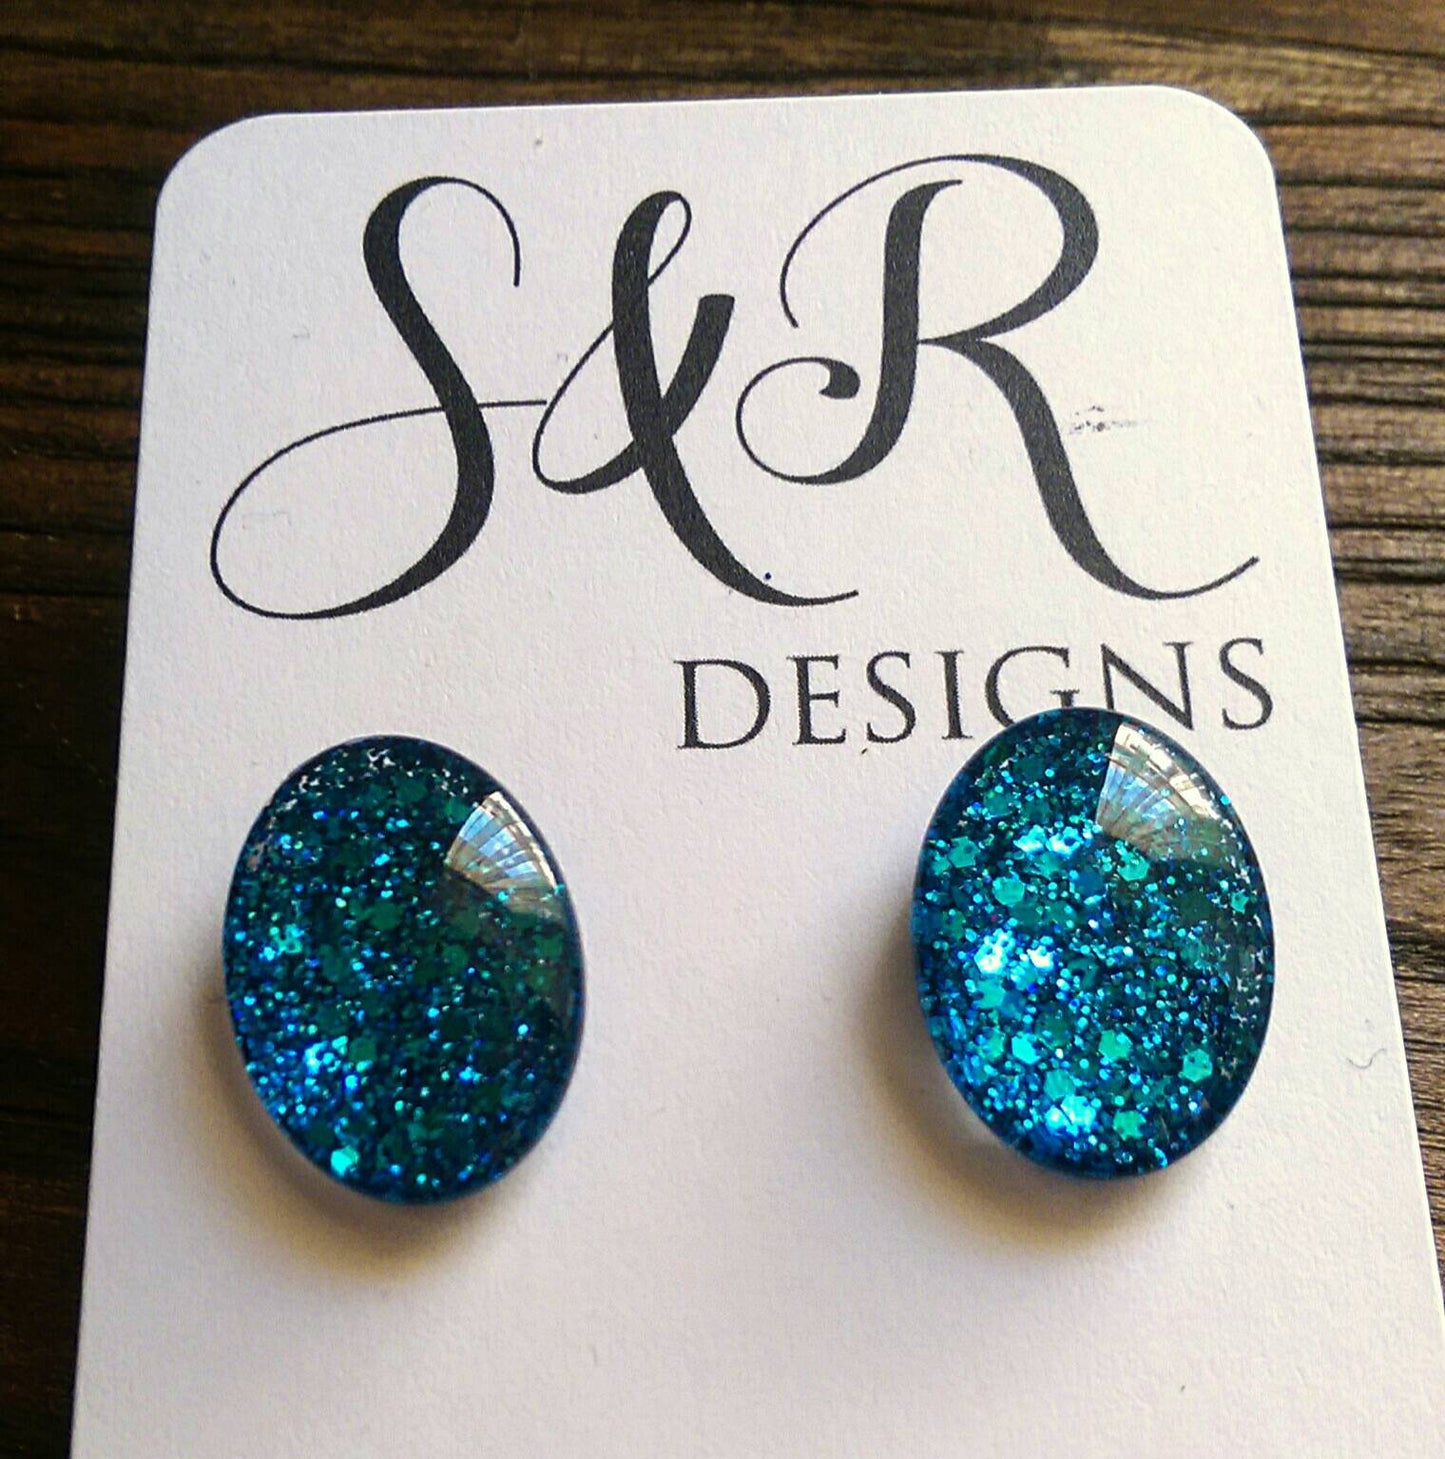 Oval Glass Glitter Resin Stud Earrings made of Stainless Steel, Ocean Blue Glitter Earrings